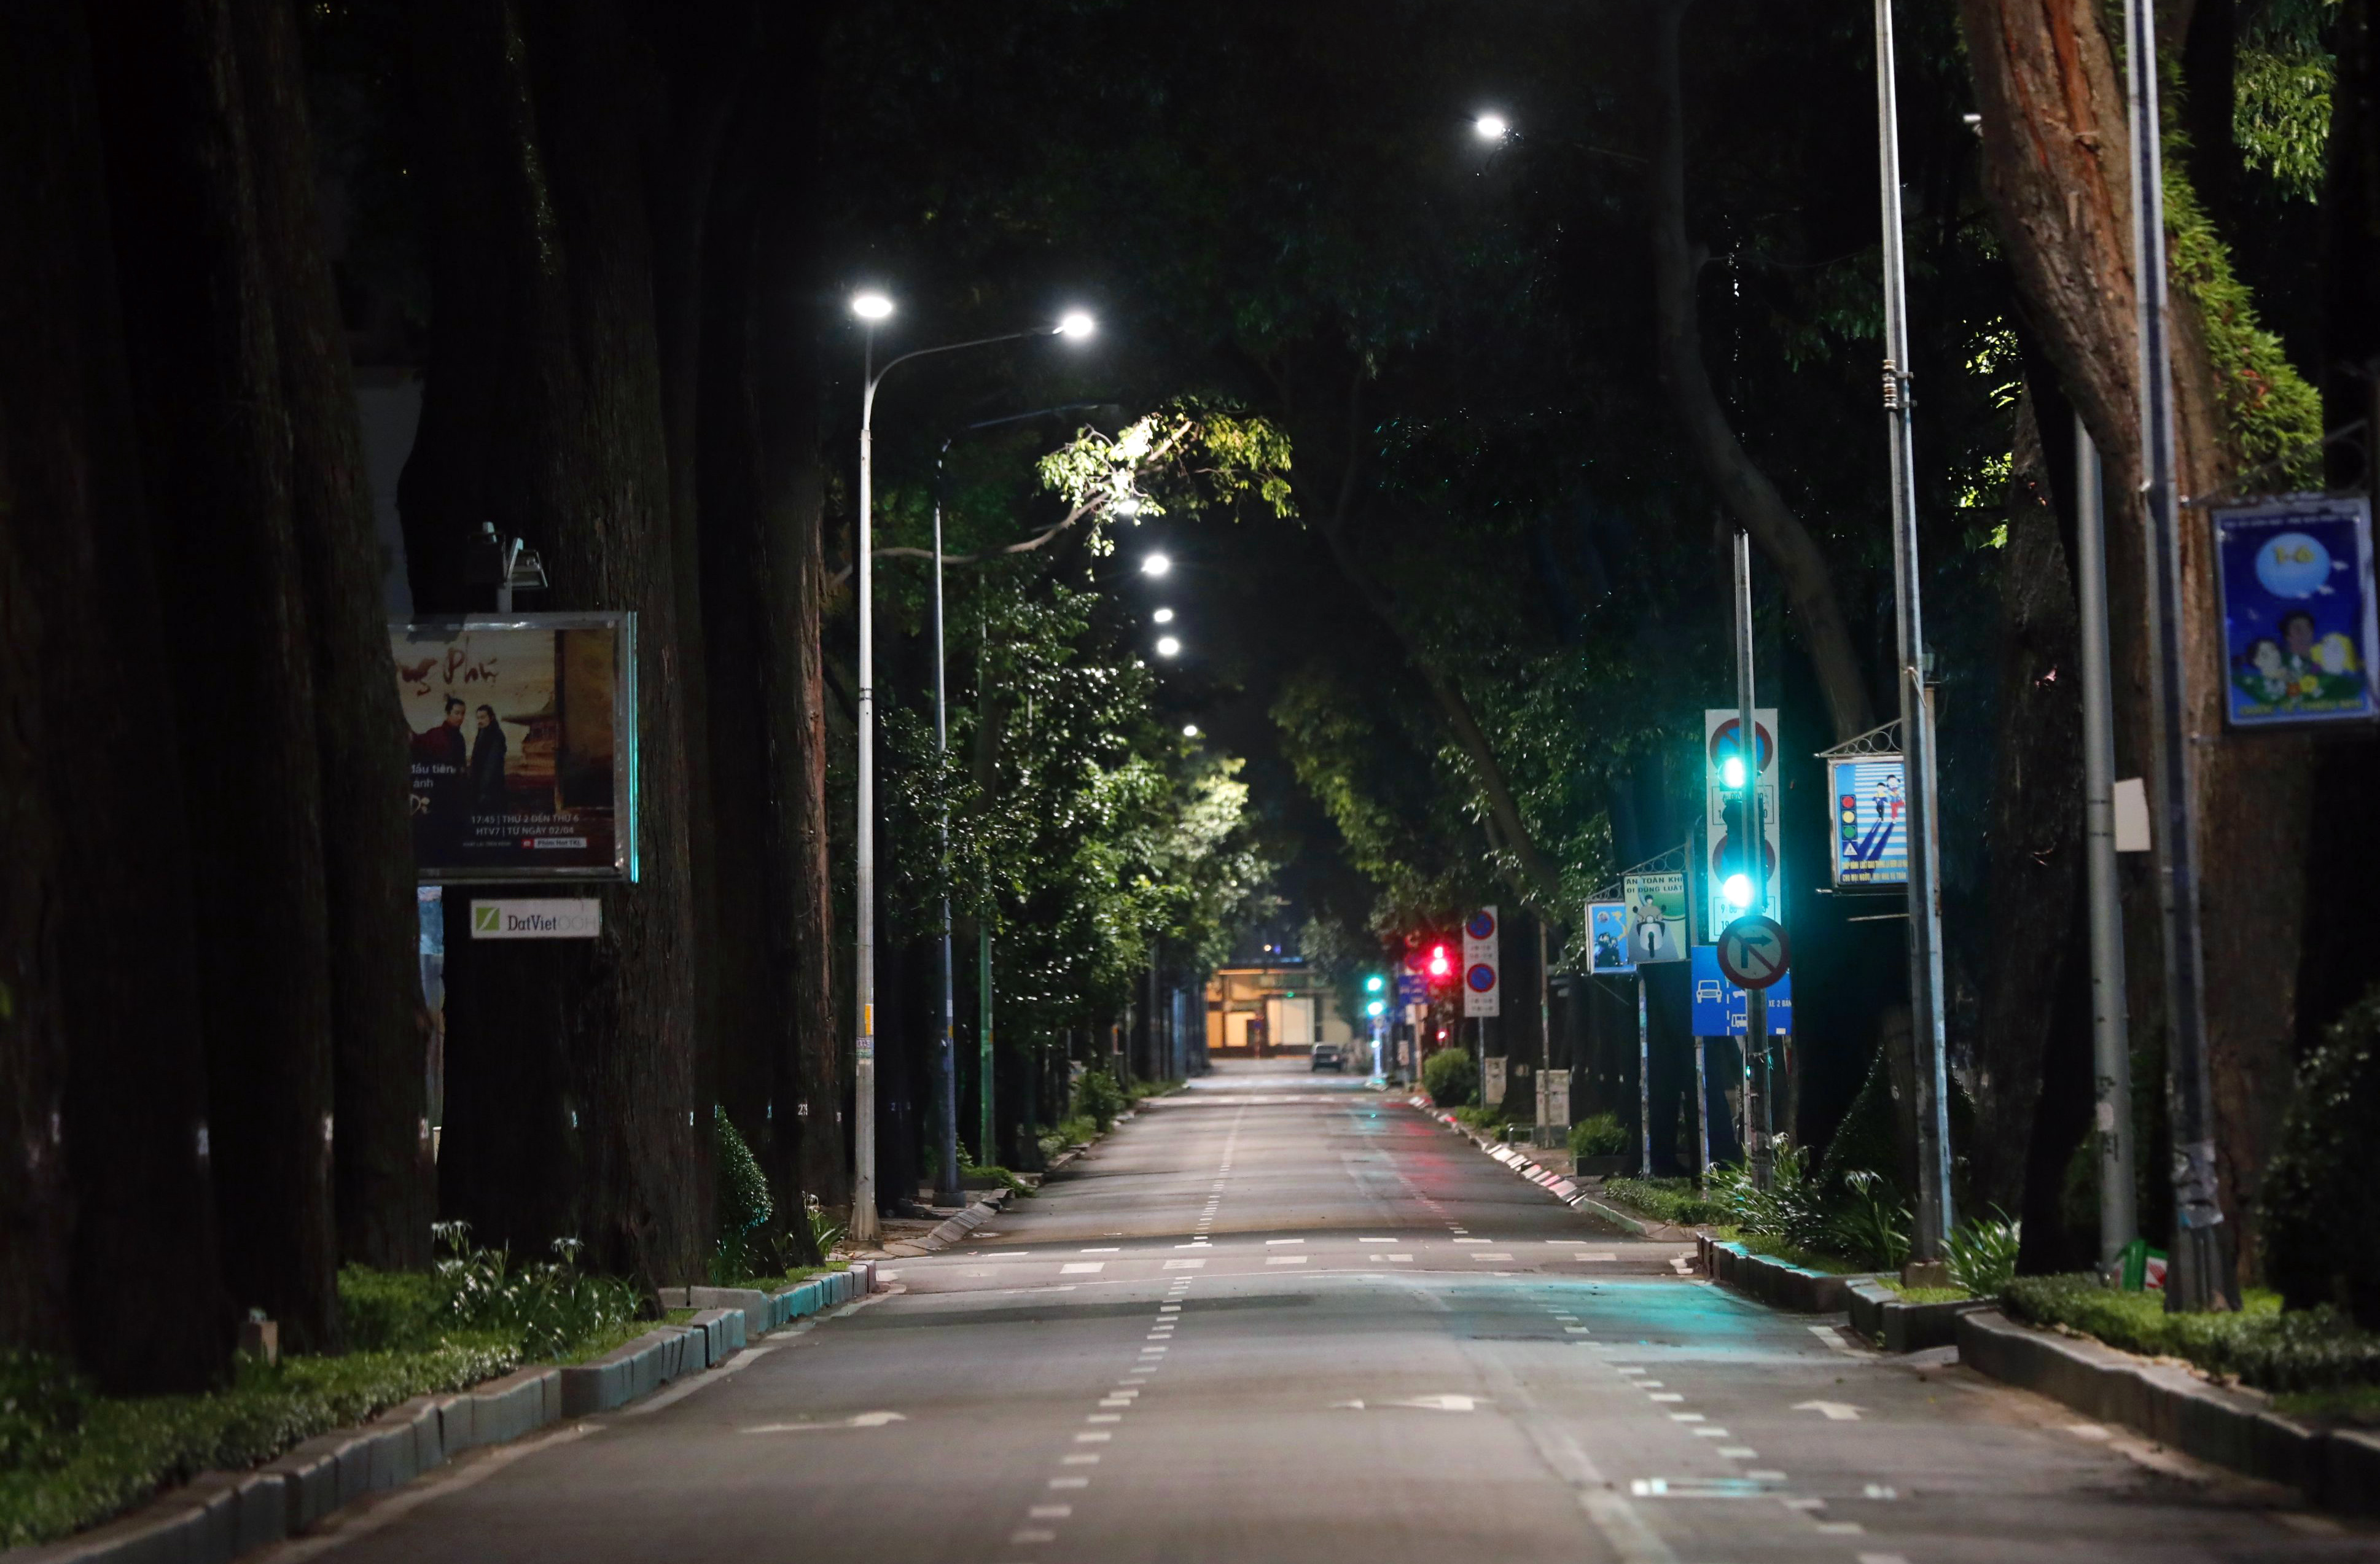 Đêm đầu tiên khi đường phố TP.HCM trở nên trống trải, khiến cho cảm giác lạnh buốt của không khí đong đầy nhưng cũng rất lãng mạn. Hành trình chụp ảnh đường phố tại Thành phố Hồ Chí Minh sẽ mang đến những bức ảnh đẹp và đầy ý nghĩa.